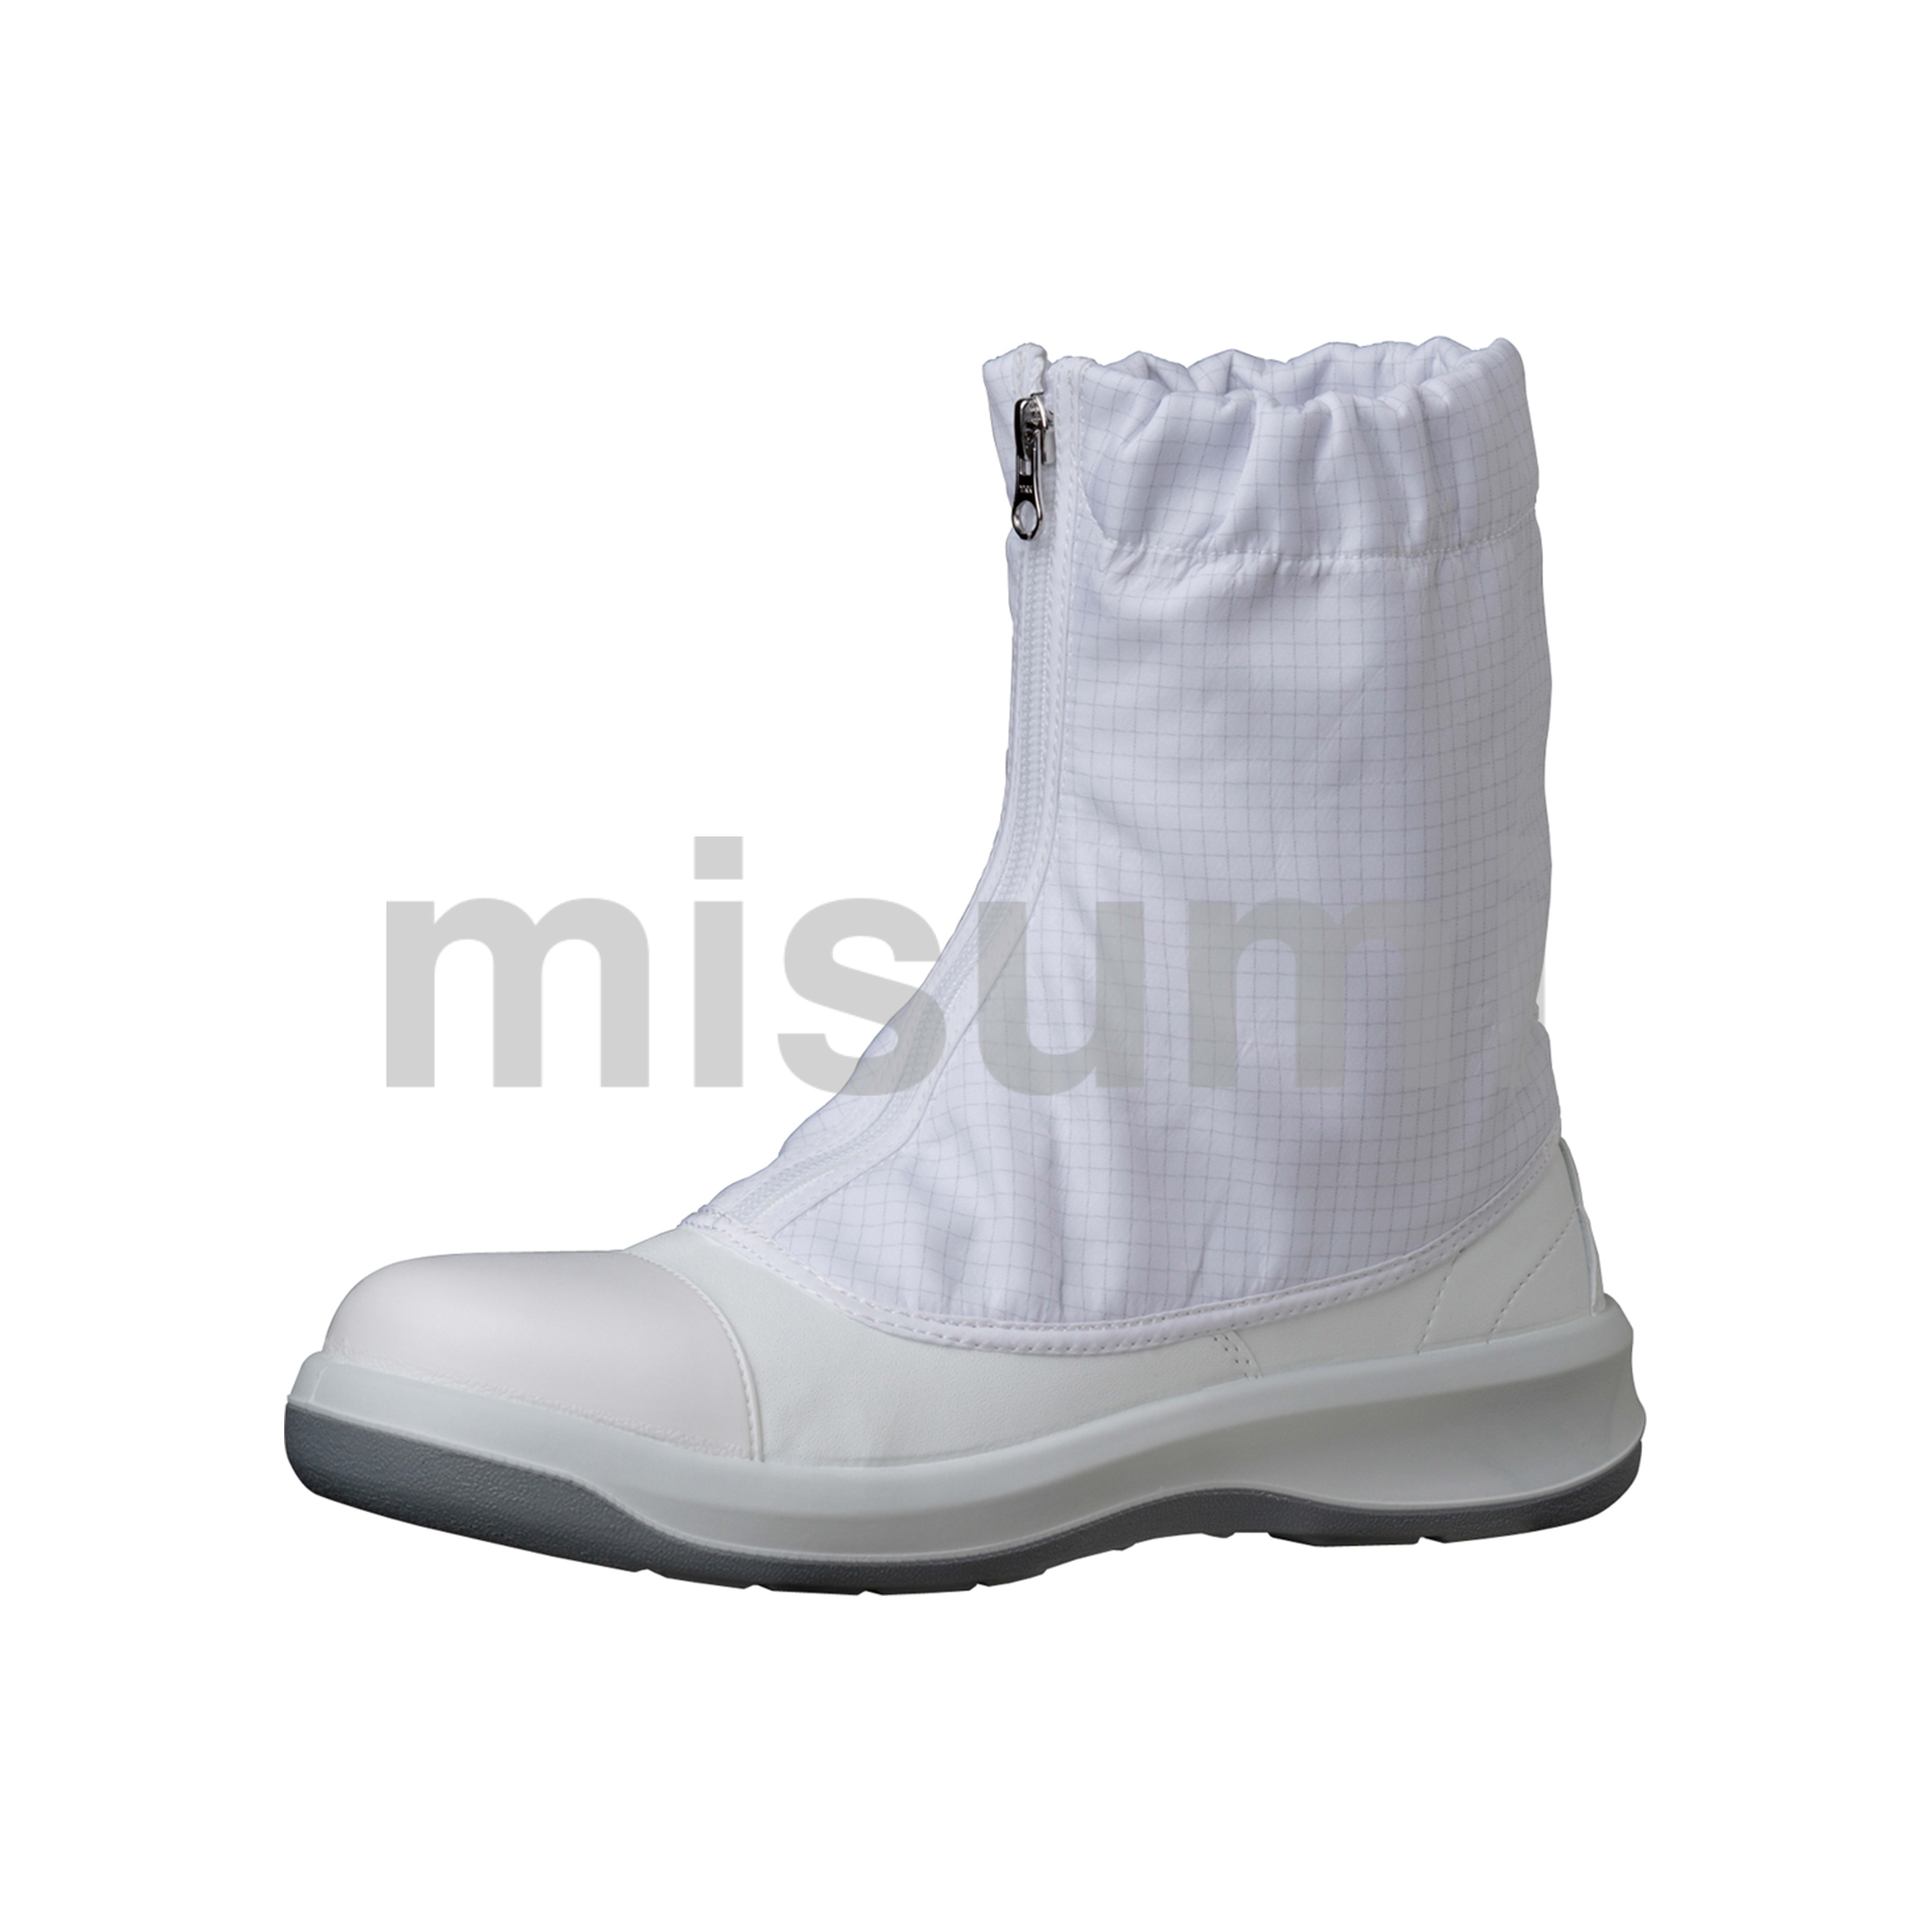 ミドリ安全 クリーン 静電安全靴 GCR1200 フルCAP ハーフ ホワイト ミドリ安全 MISUMI(ミスミ)